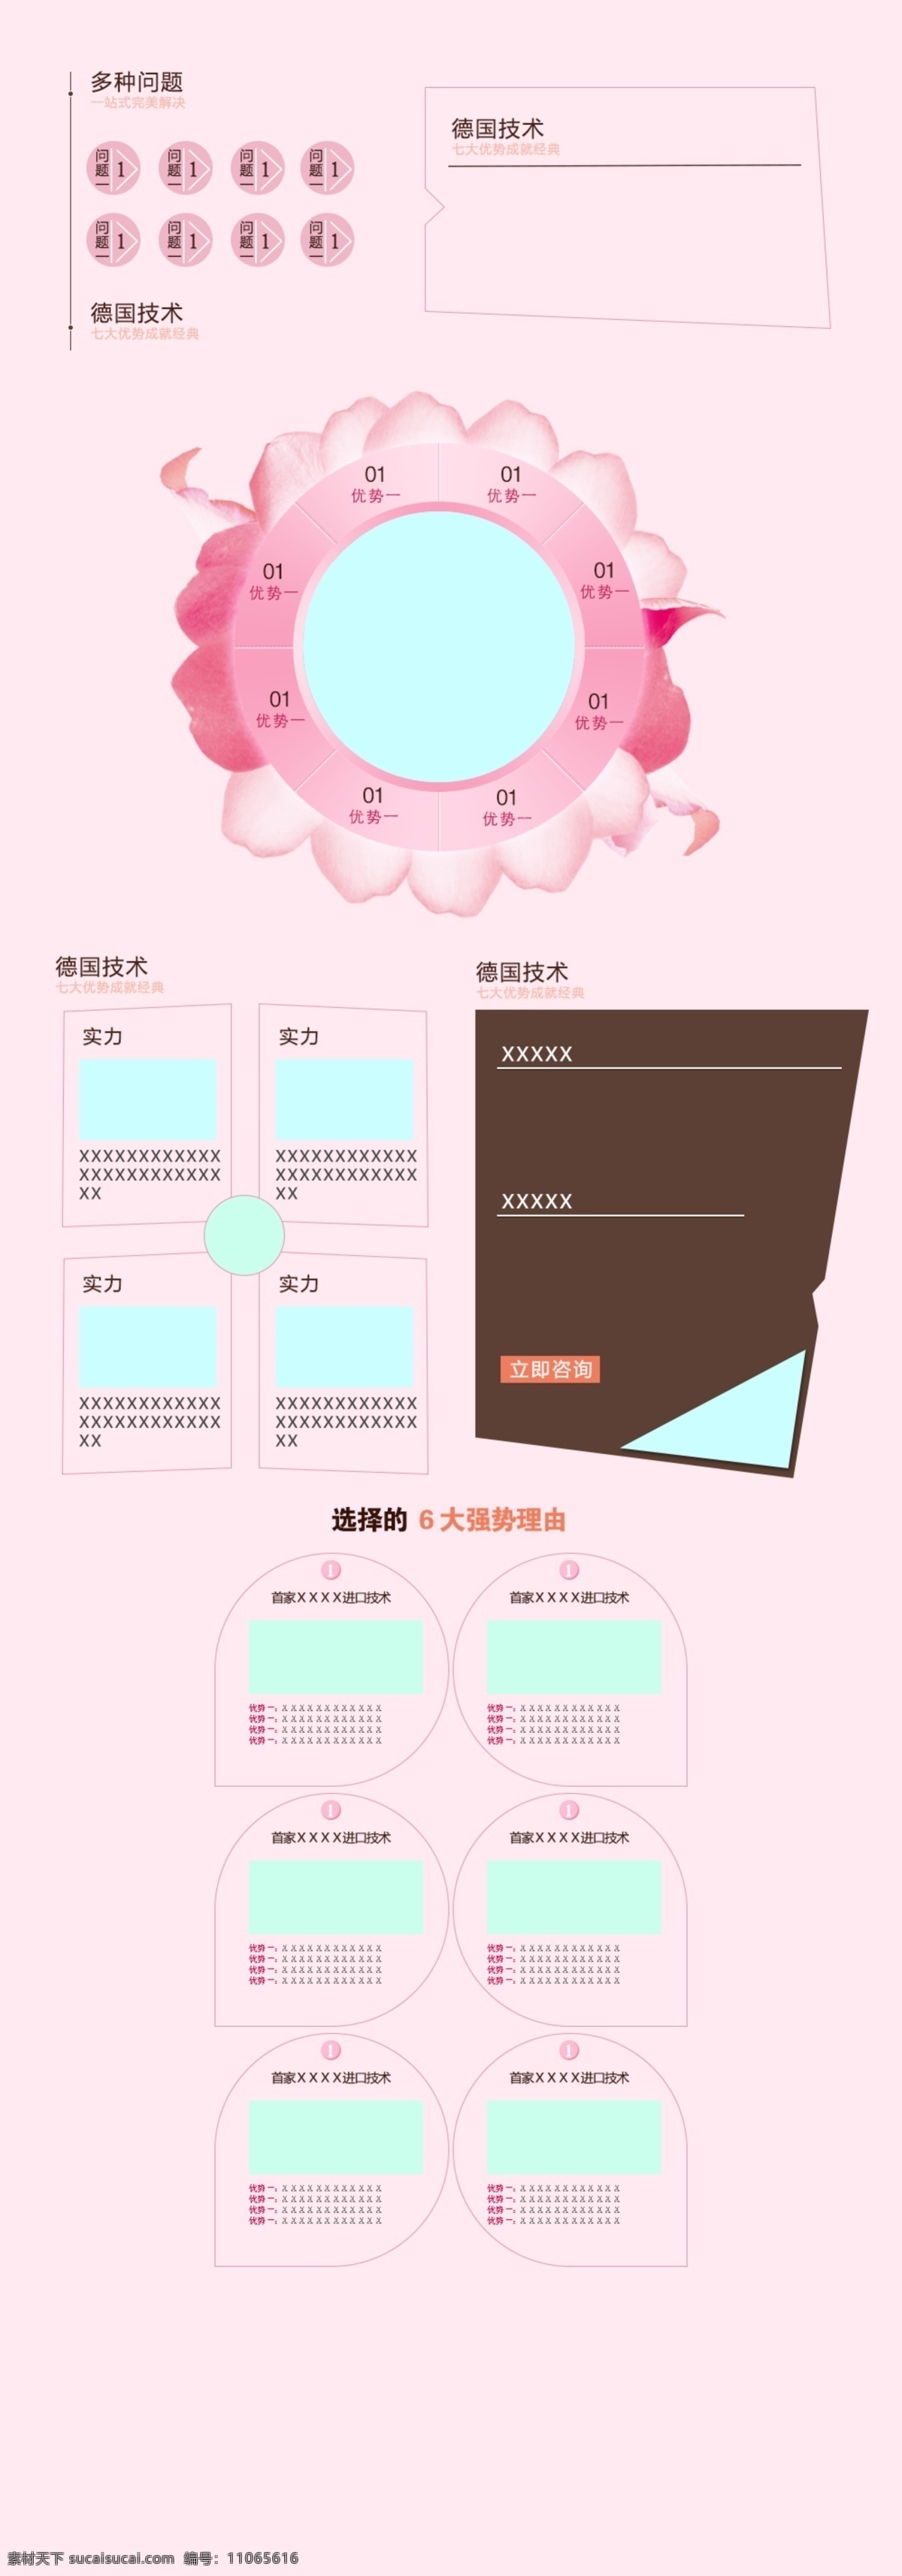 花瓣 网页 素材图片 web 粉色 妇科 模板 女性 界面设计 中文模板 其他网页素材